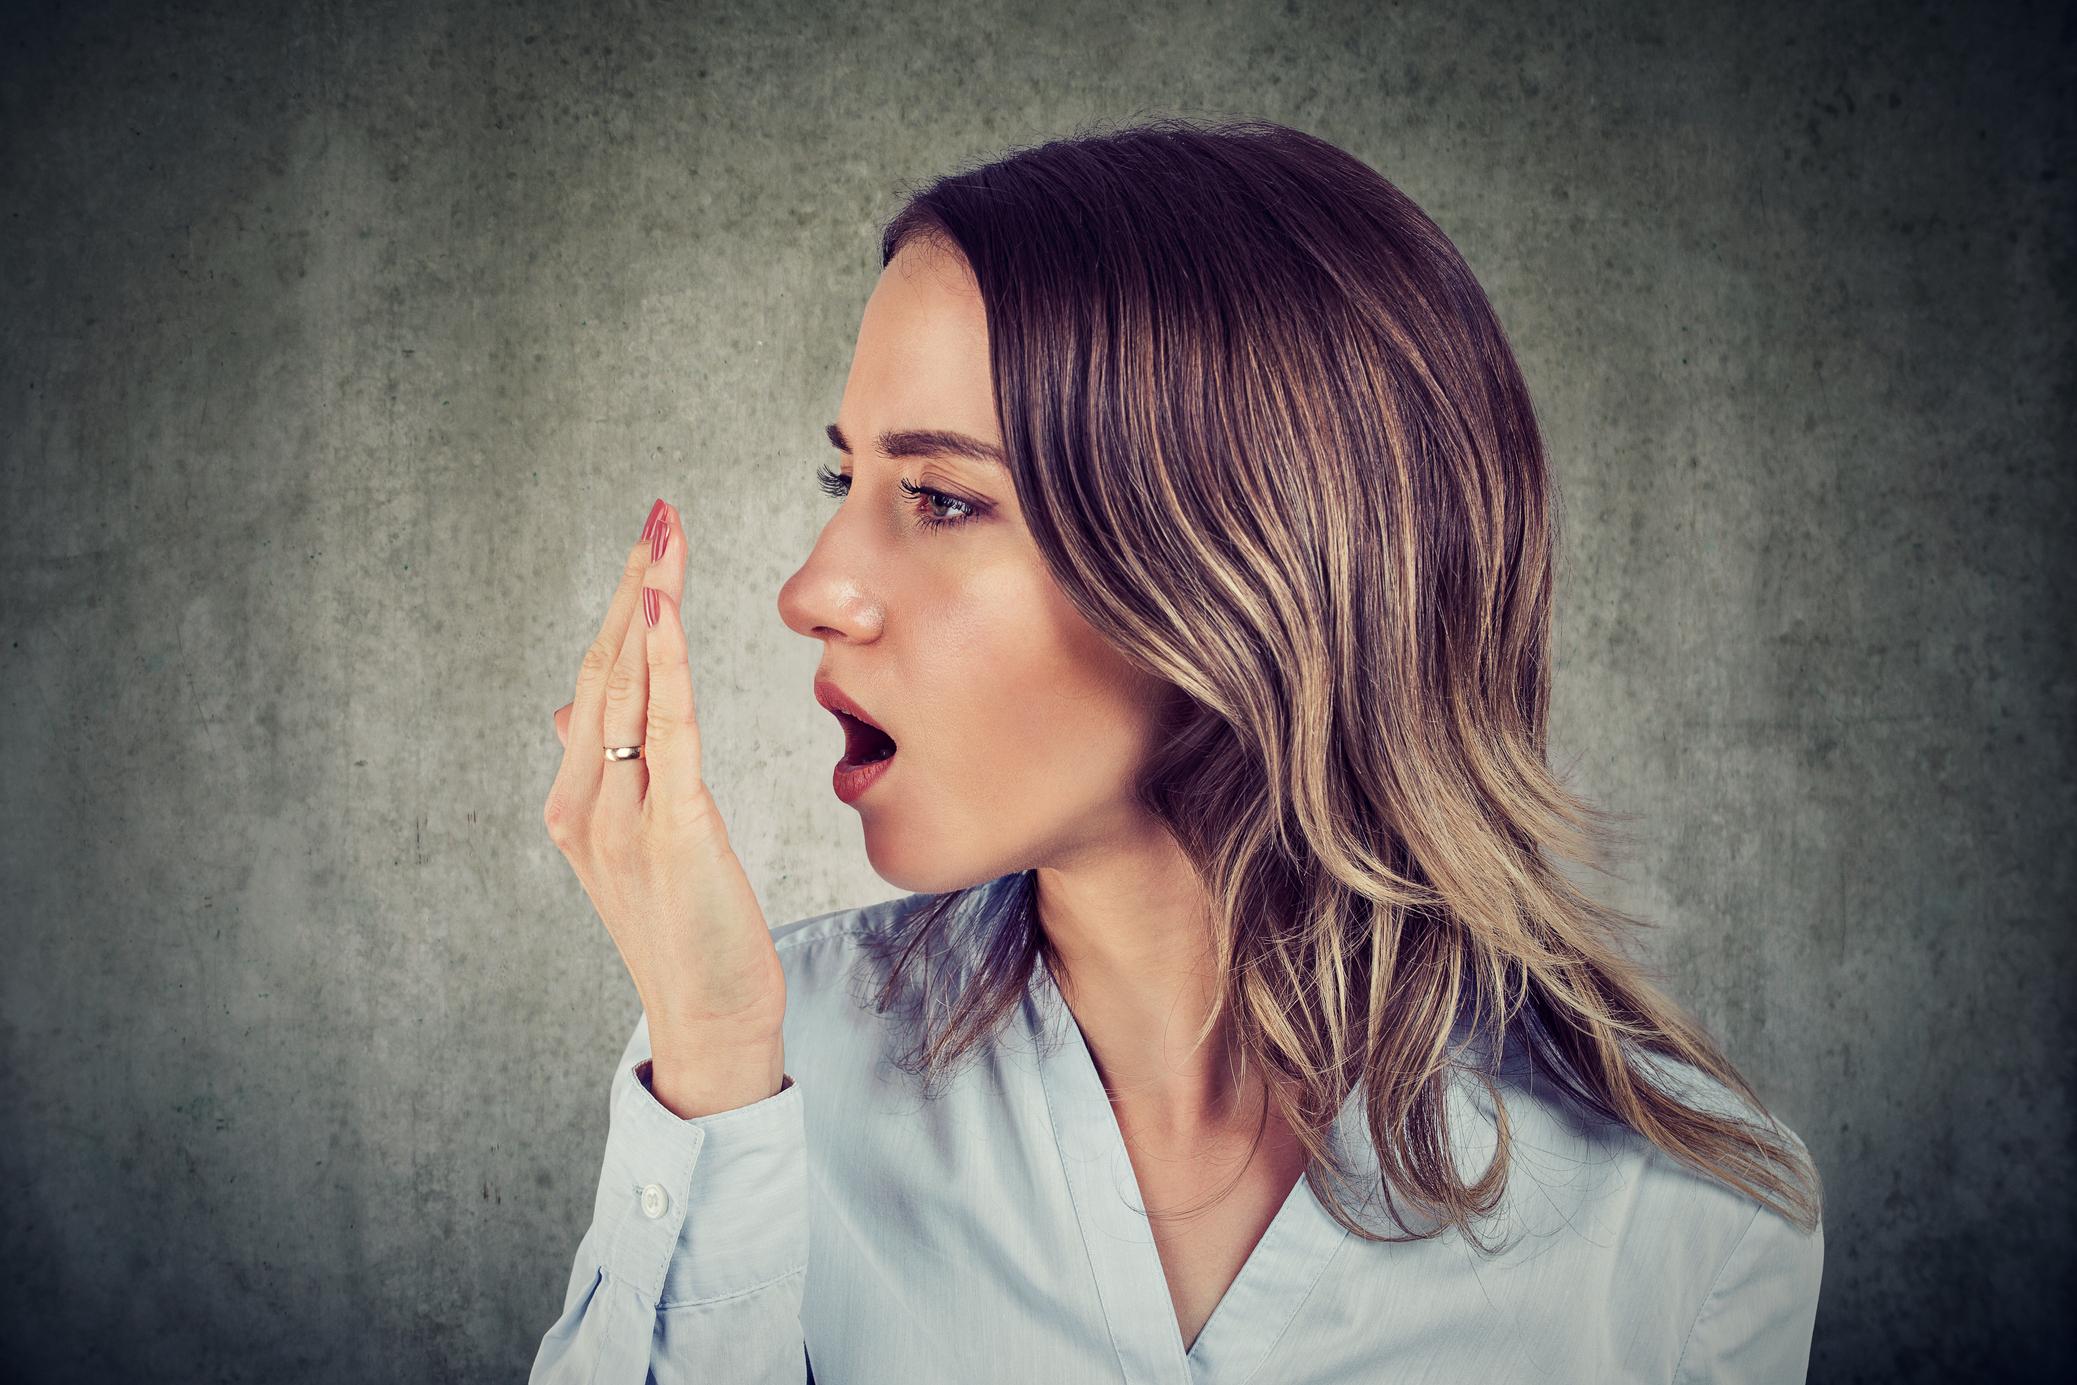 Halitose chez l'enfant : quelles sont les causes de la mauvaise haleine ?